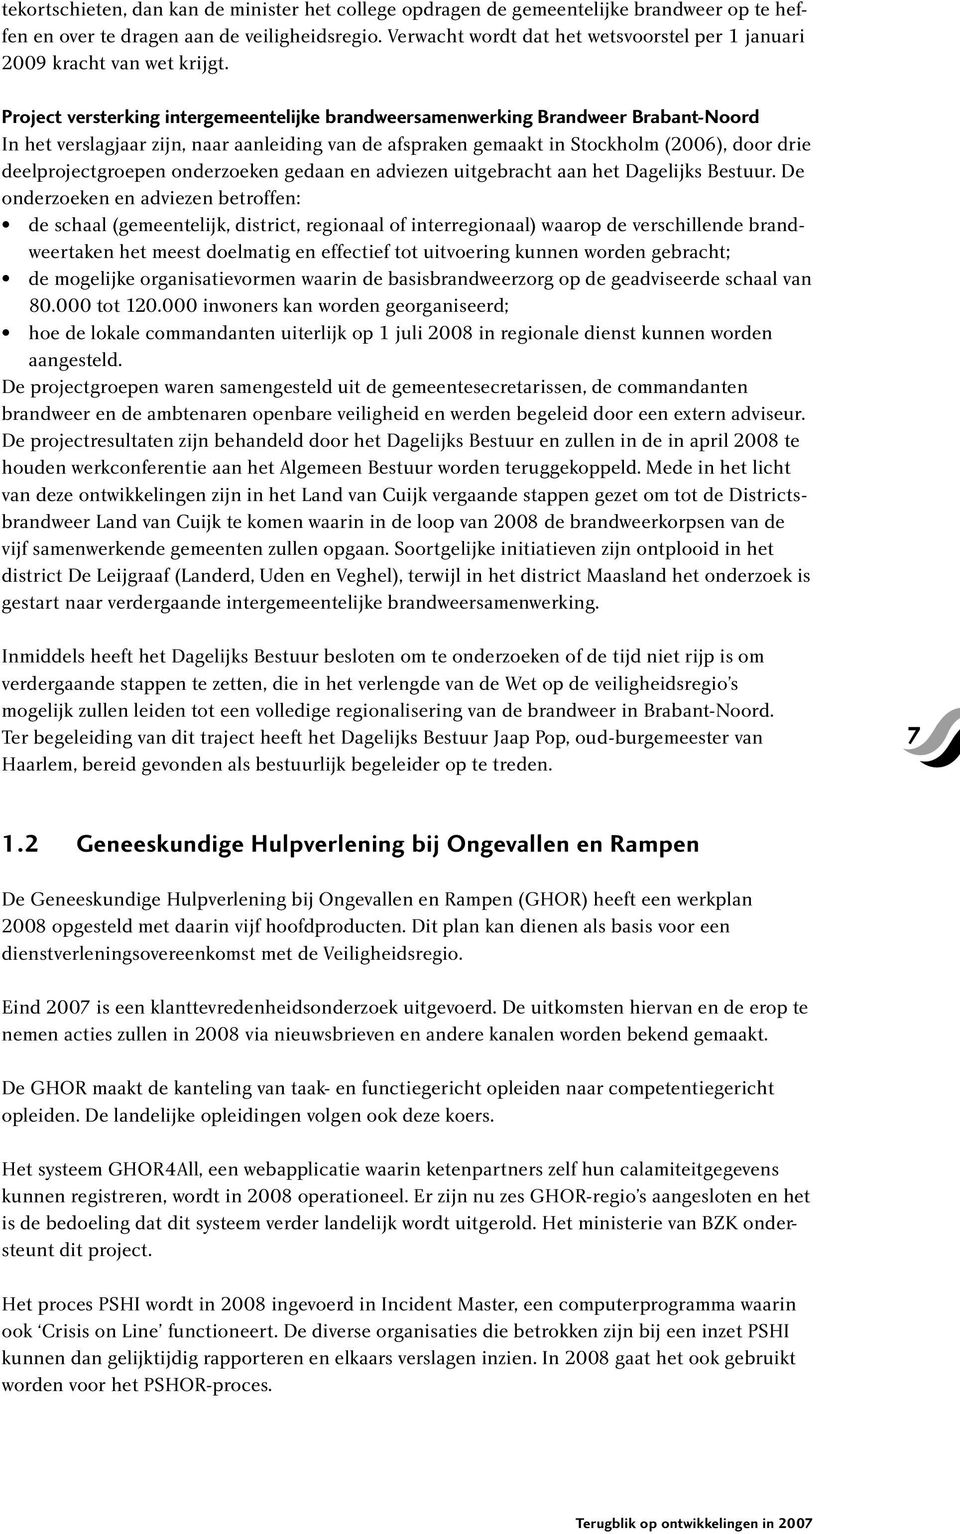 Project versterking intergemeentelijke brandweersamenwerking Brandweer Brabant-Noord In het verslagjaar zijn, naar aanleiding van de afspraken gemaakt in Stockholm (2006), door drie